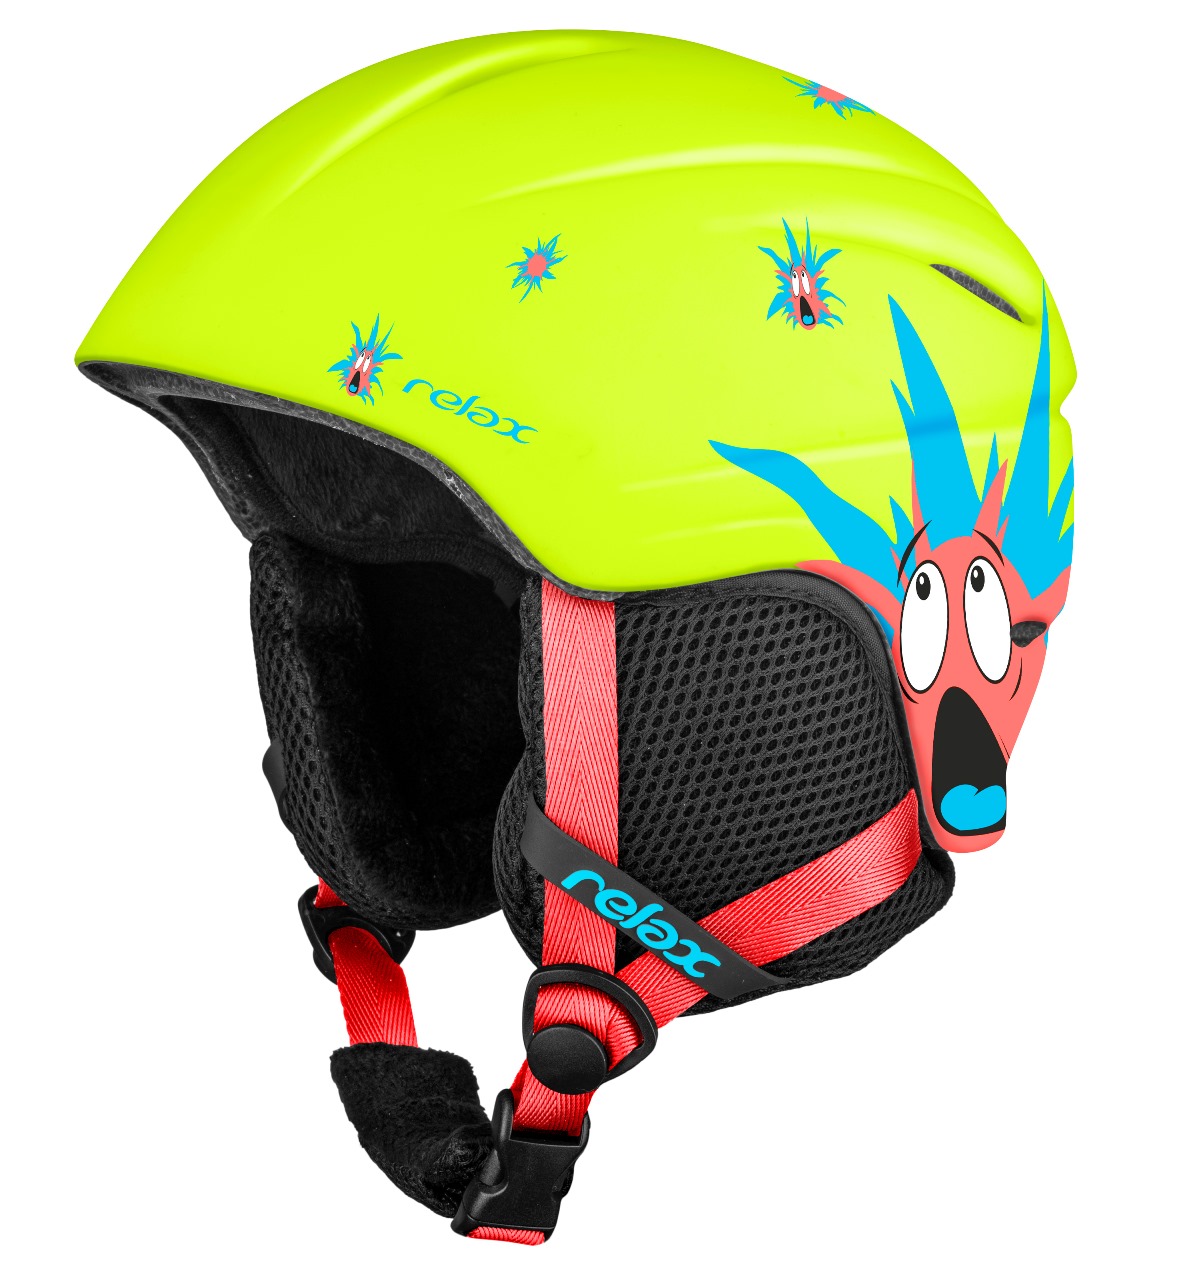 Dětská lyžařská helma TWISTER RELAX žlutá